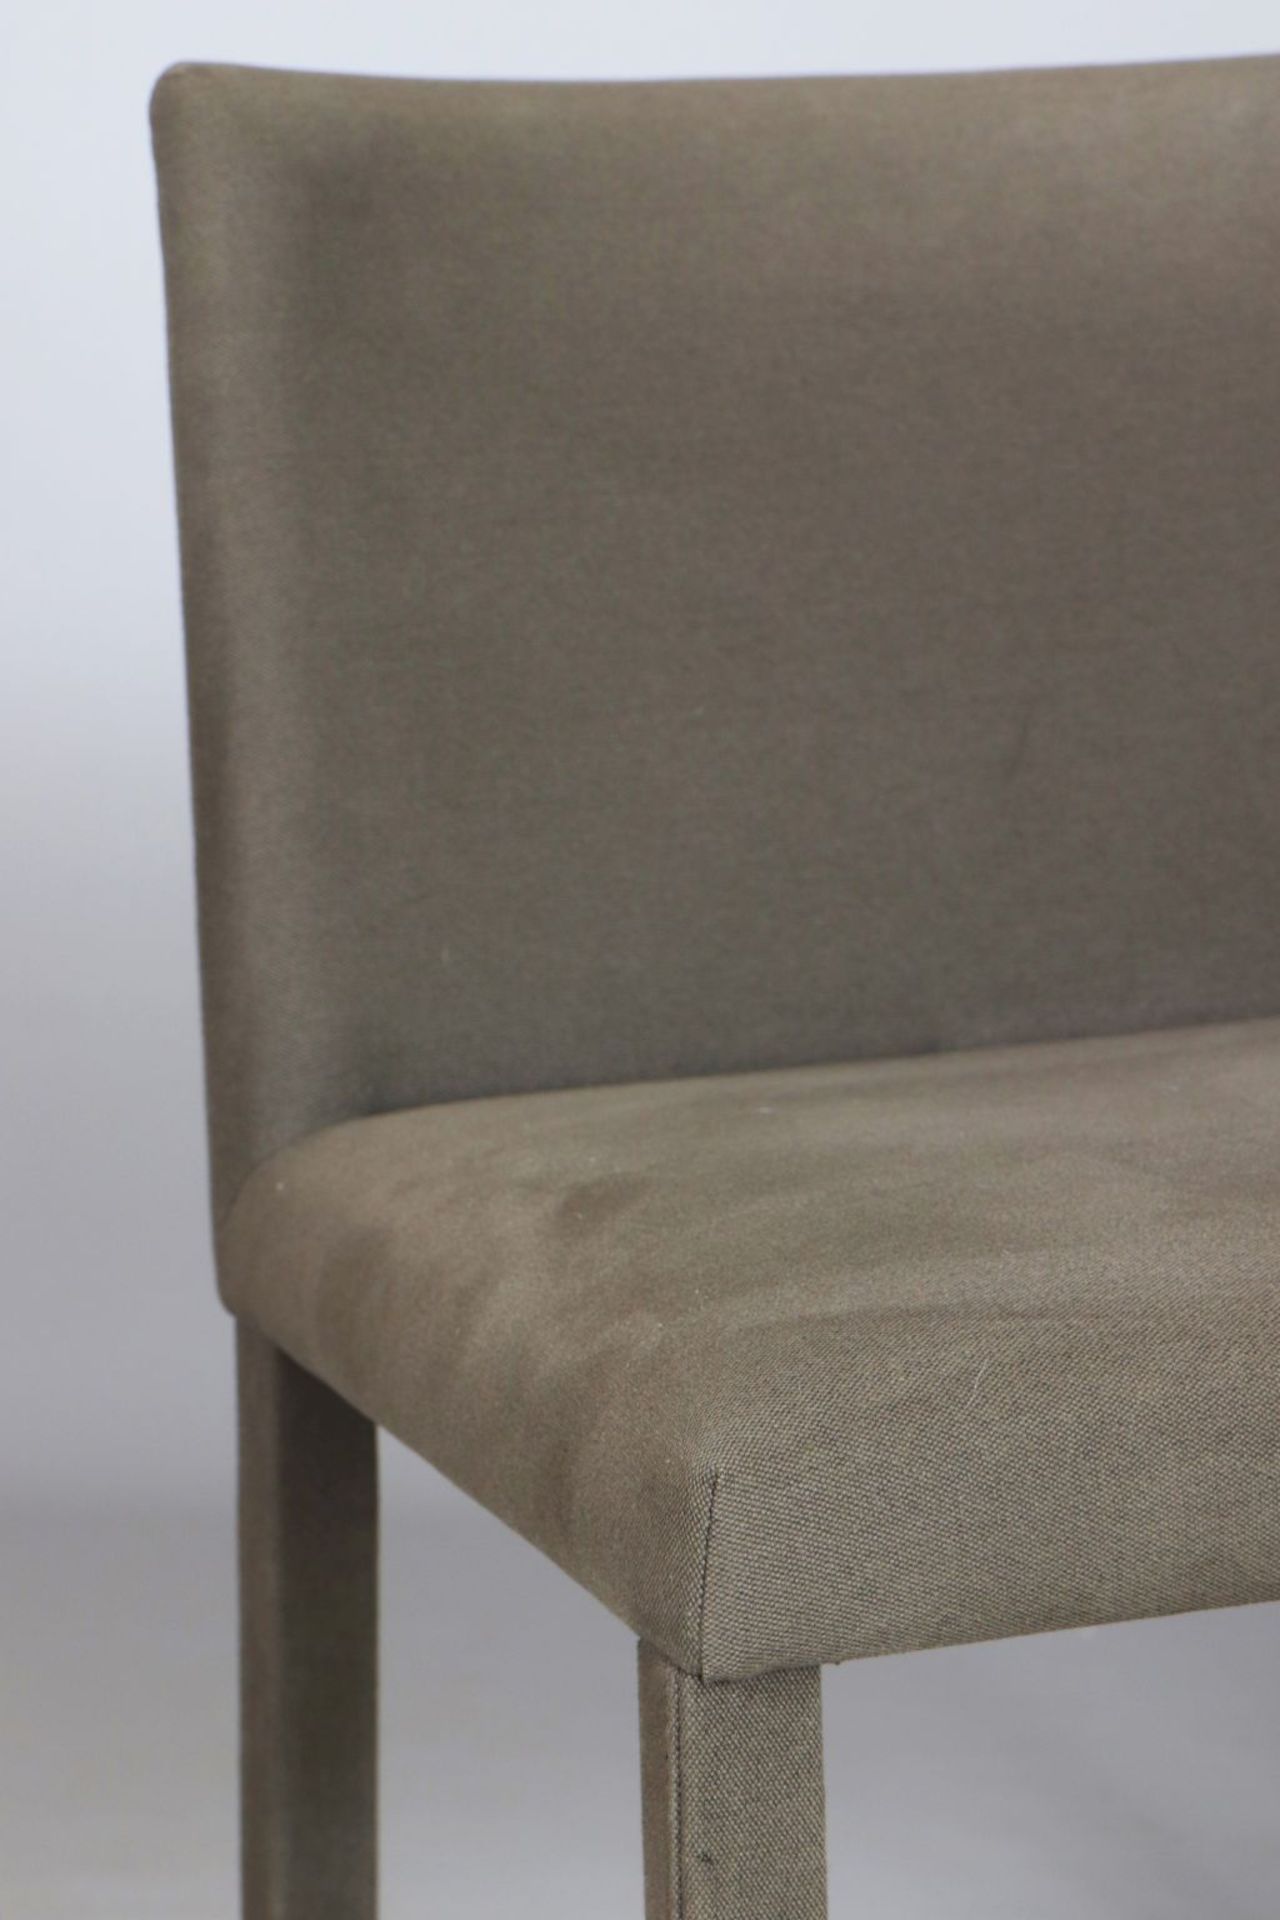 Paar ARPA (Konferenz-)Stühlemauve-grauer Webbezug, eckige, gepolsterte Sitzfläche auf 4 stoff - Image 3 of 3